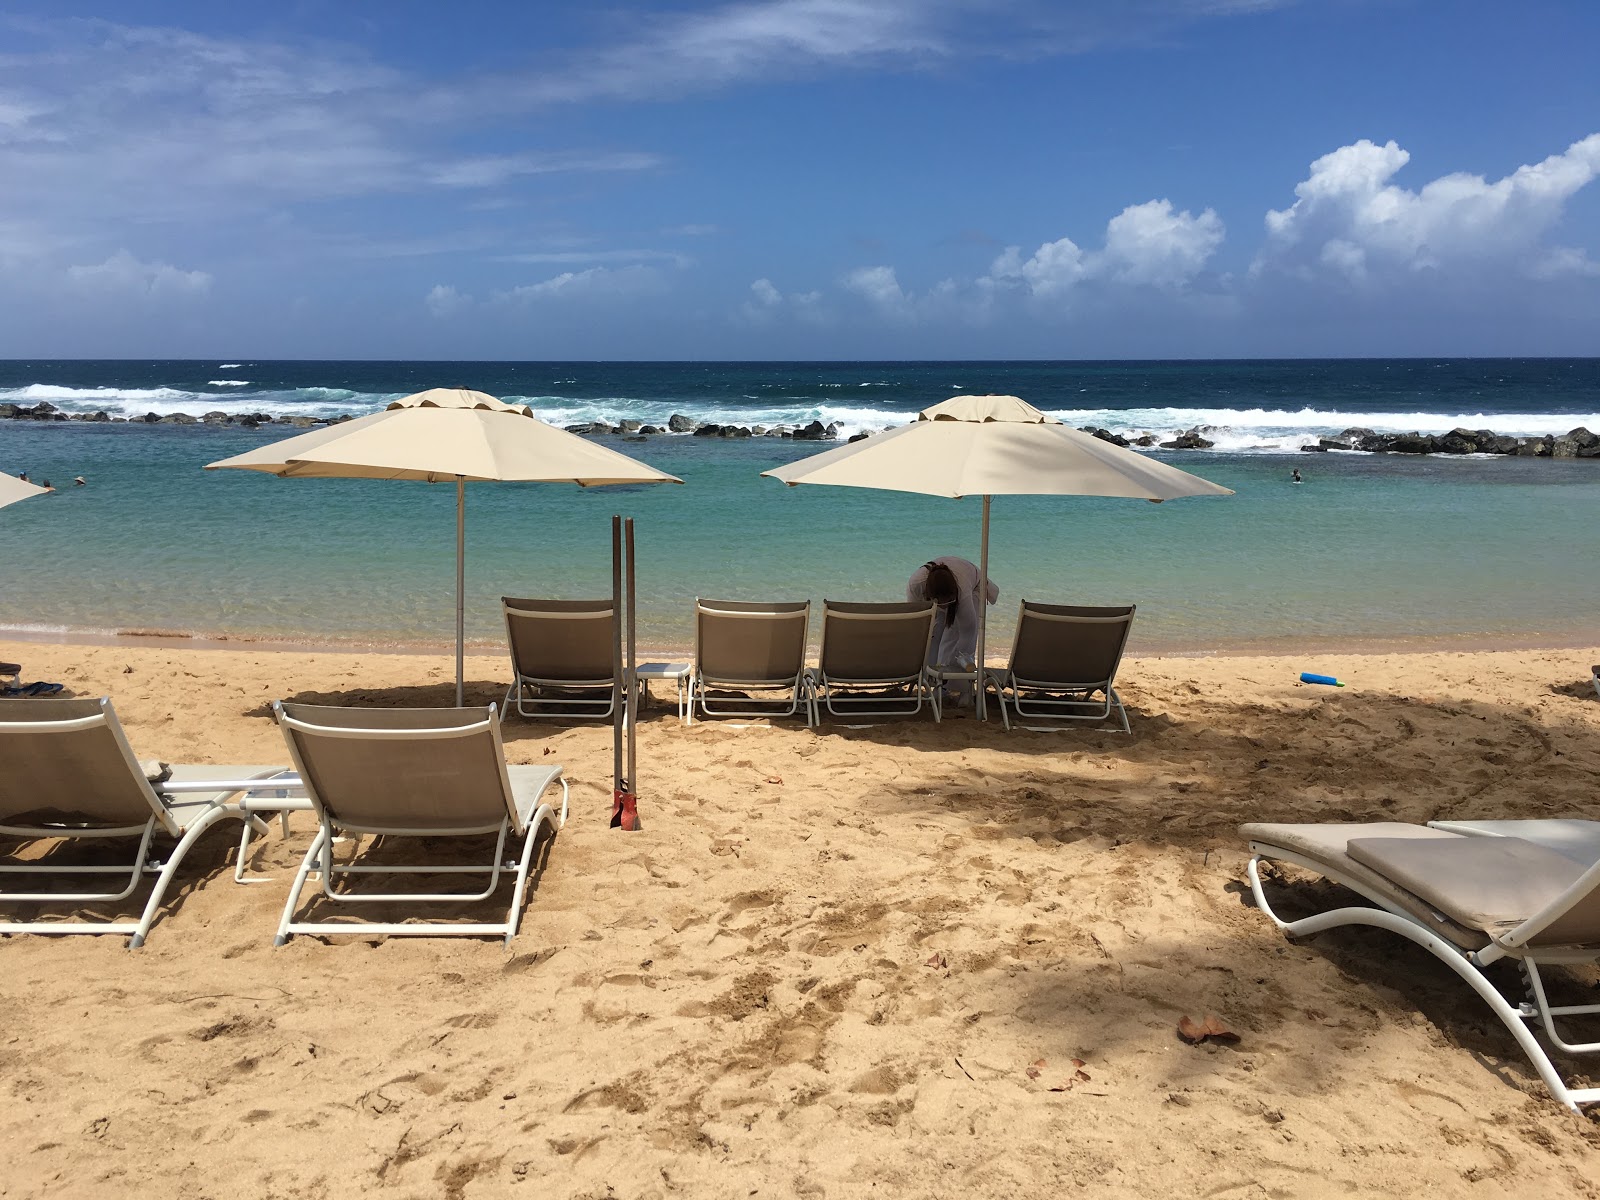 Zdjęcie West beach - popularne miejsce wśród znawców relaksu